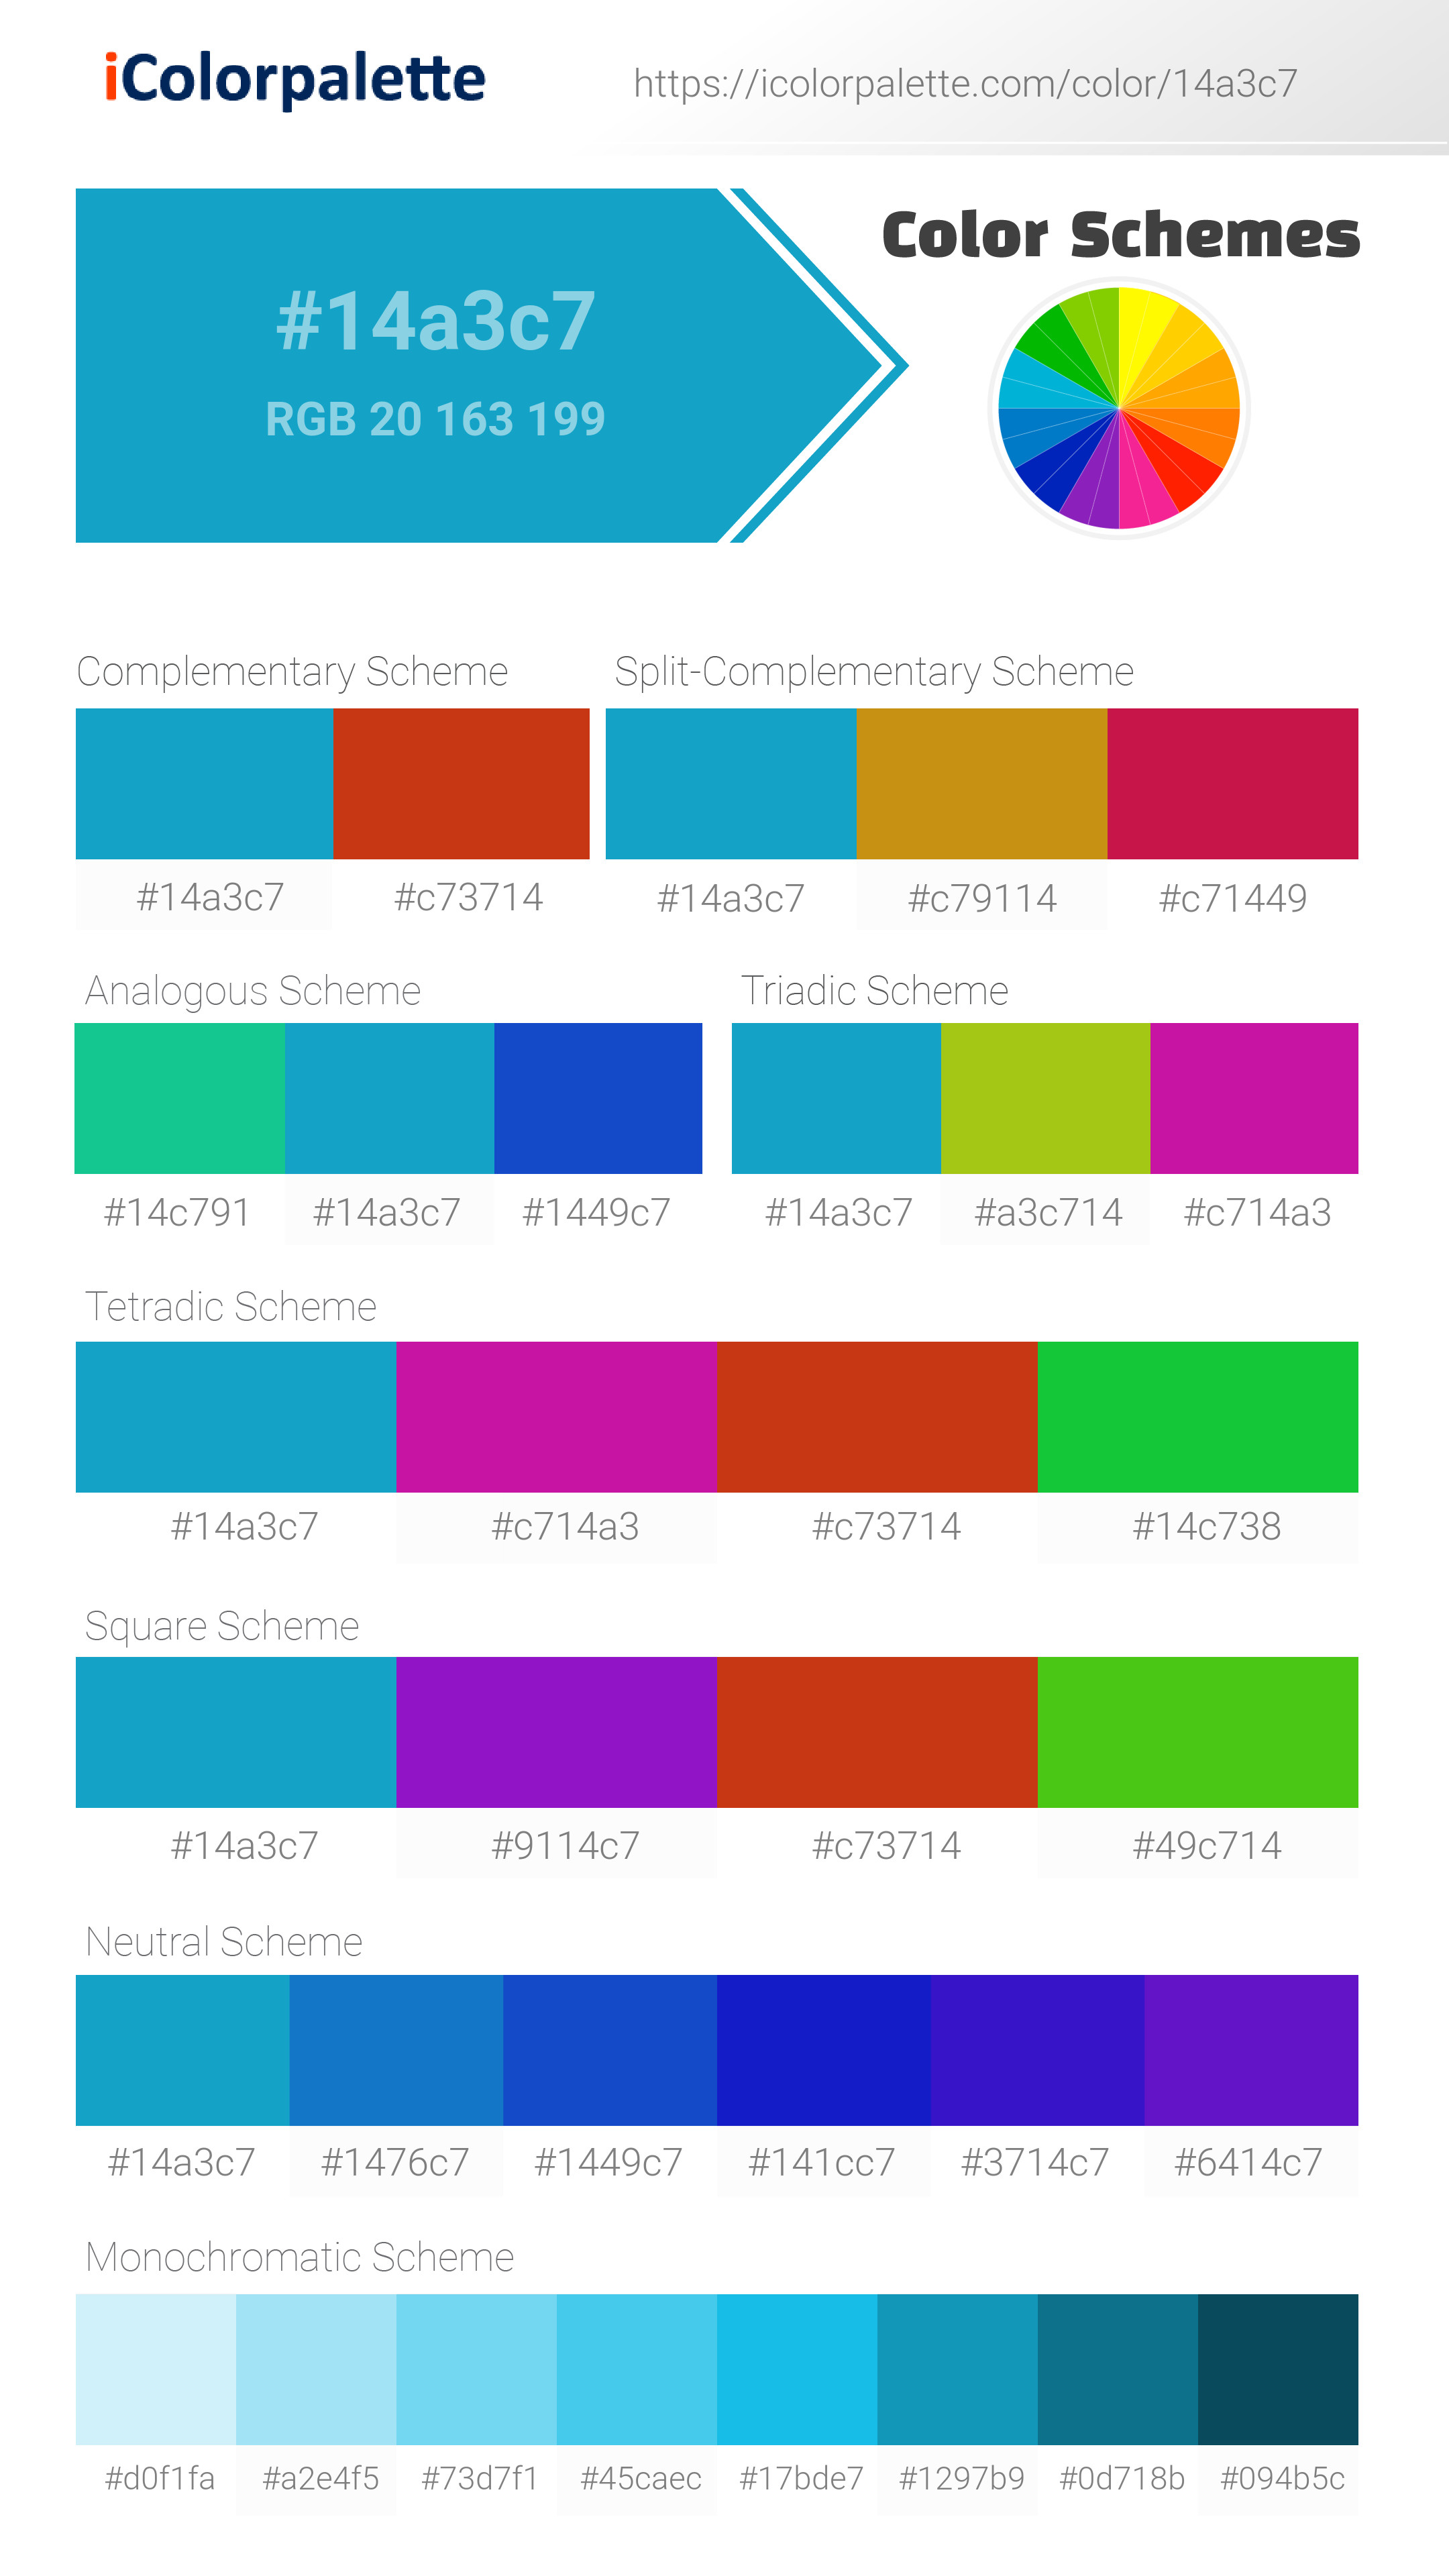 https://www.icolorpalette.com/download/schemes/14a3c7_colorschemes_icolorpalette.jpg